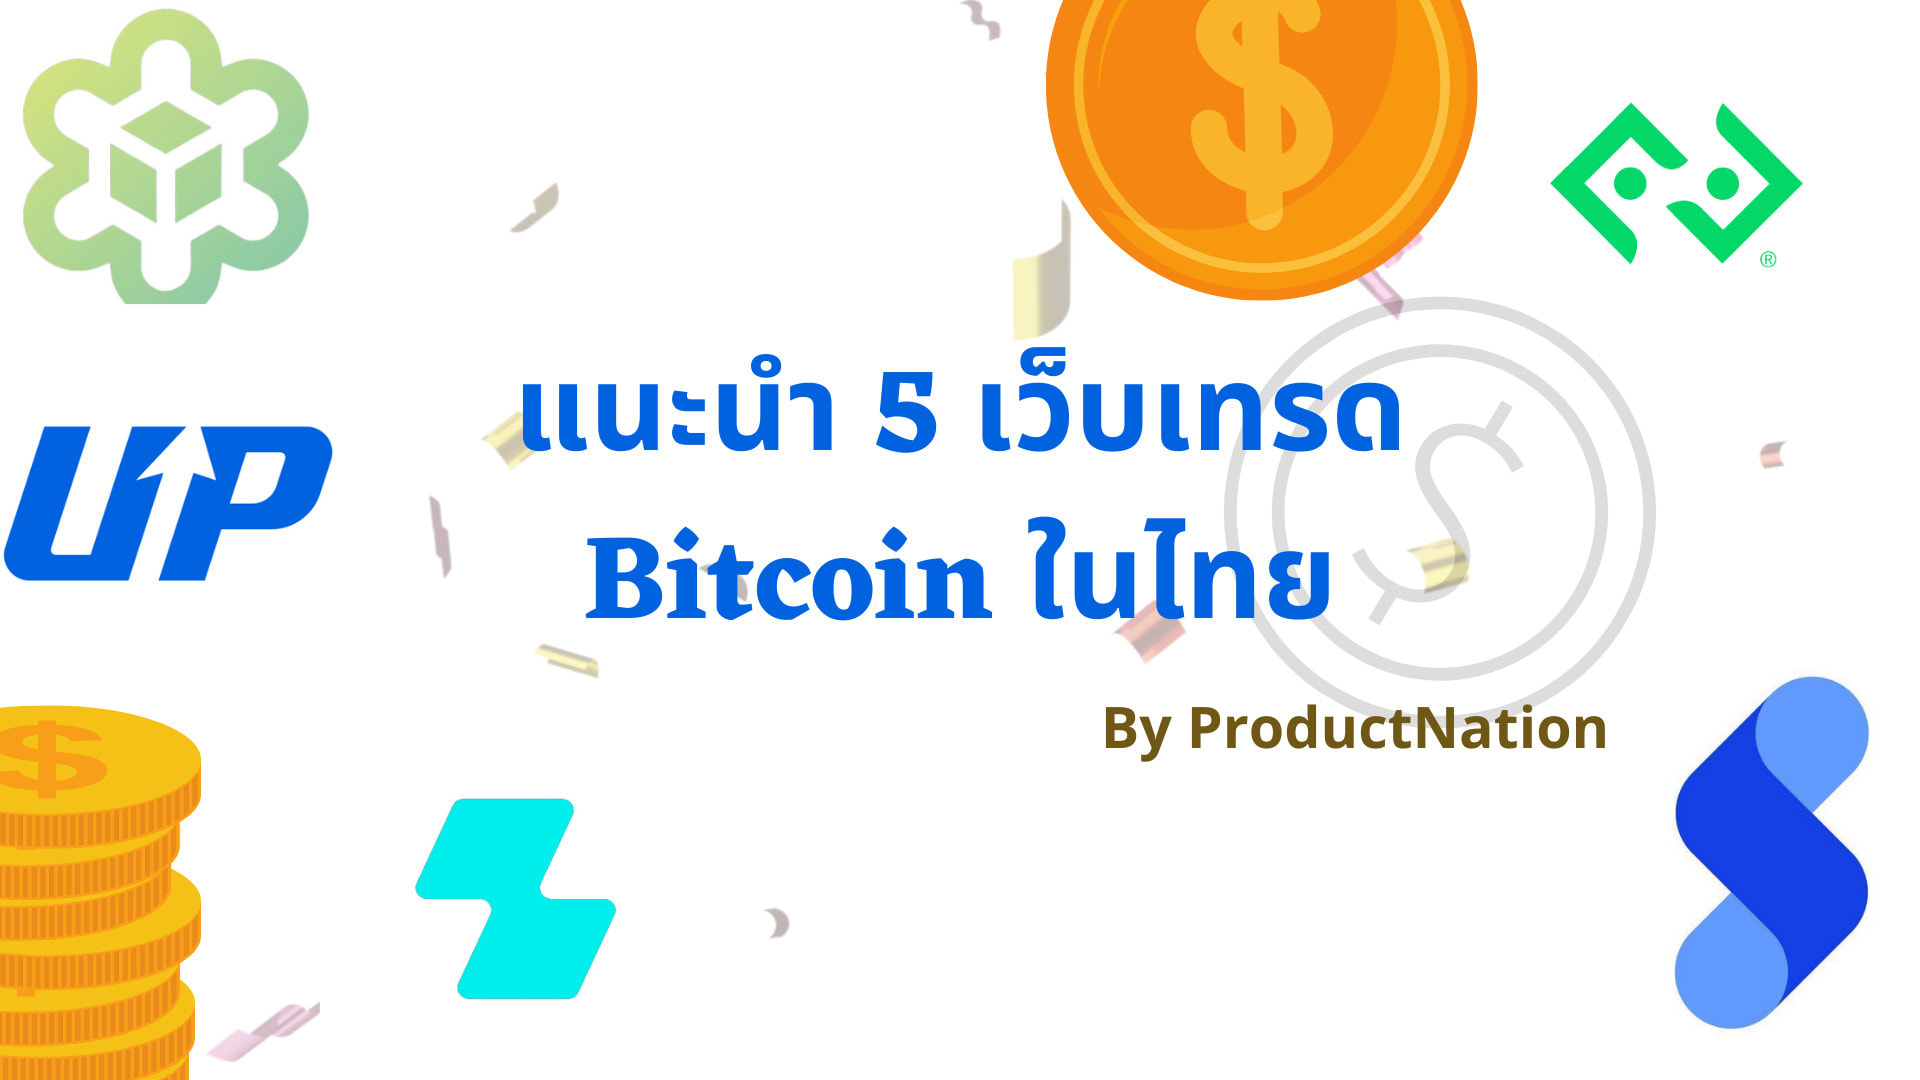 5 เว็บเทรด Bitcoin ในไทย เชื่อถือได้ มีรับการรับรองจากกลต.